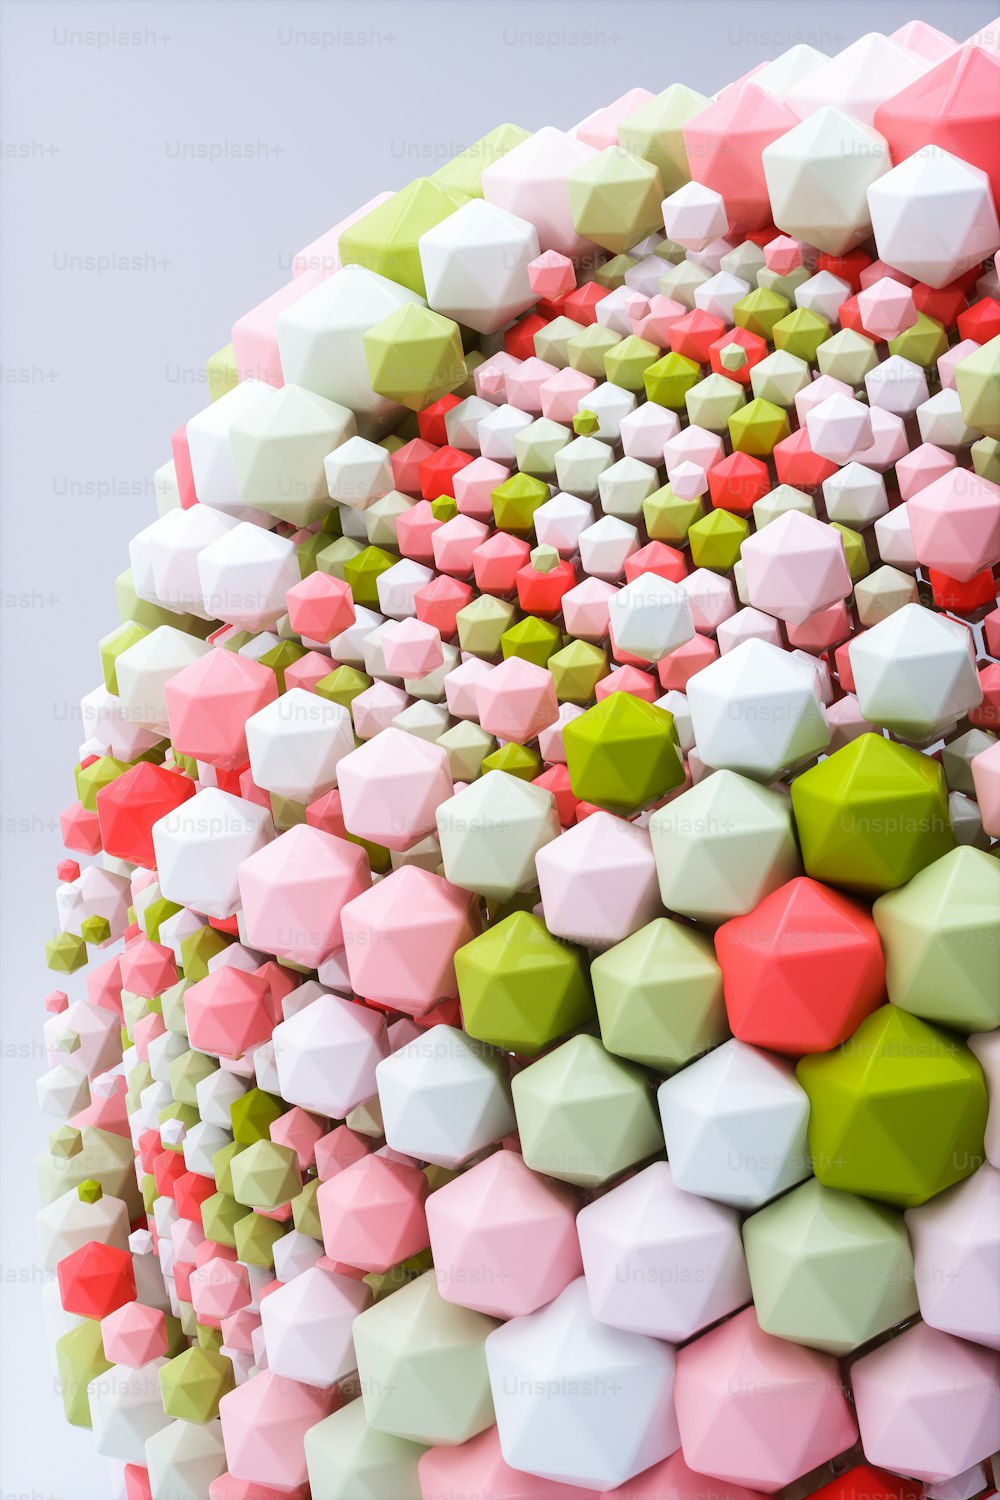 Une sculpture colorée faite de cubes et de formes hexagonales